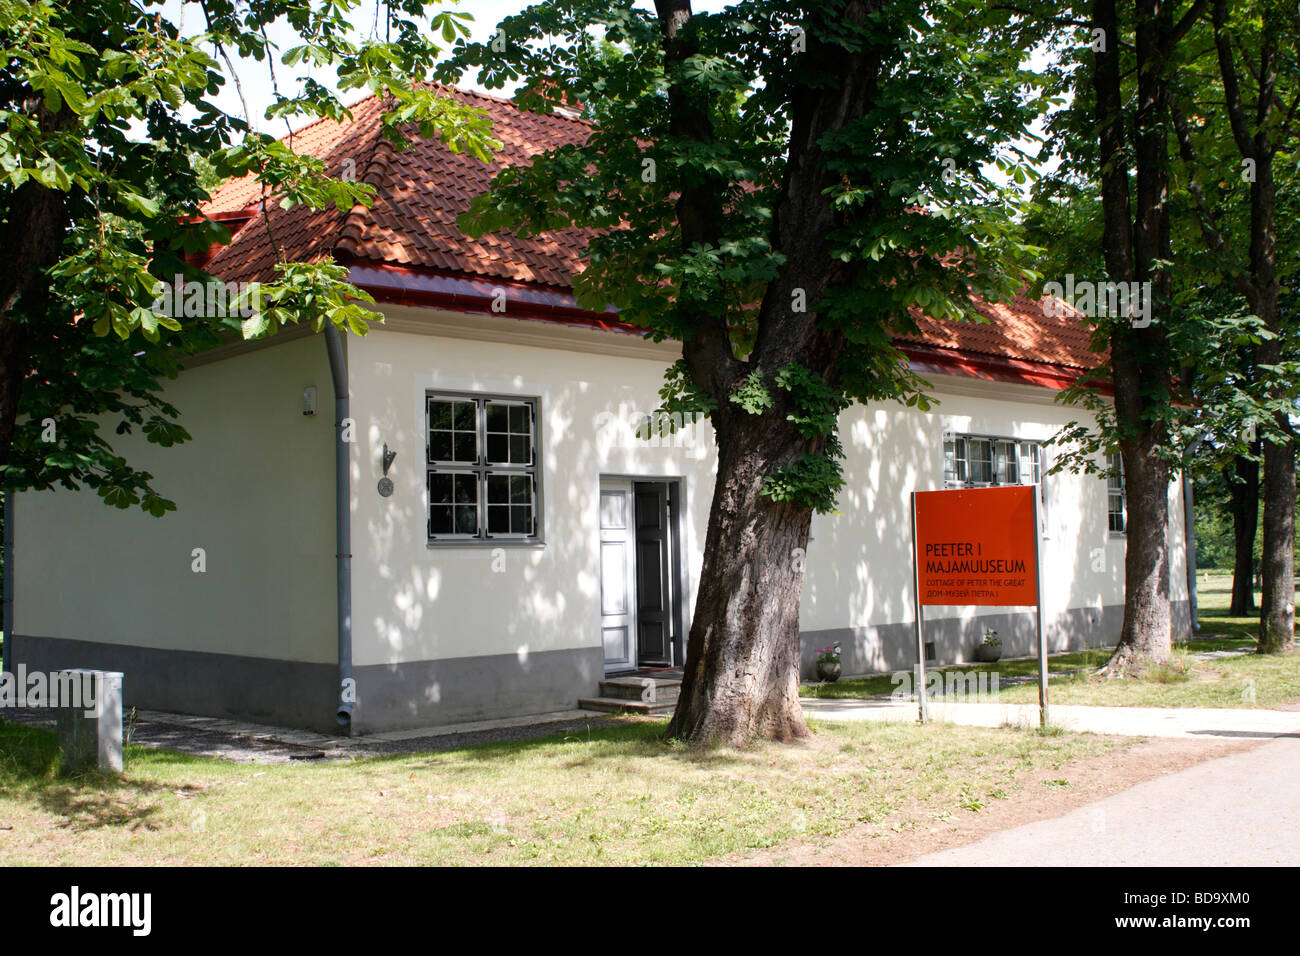 Tsar Peter the Great's Cottage in Kadriorg Park, Tallinn, Estonia Stock Photo